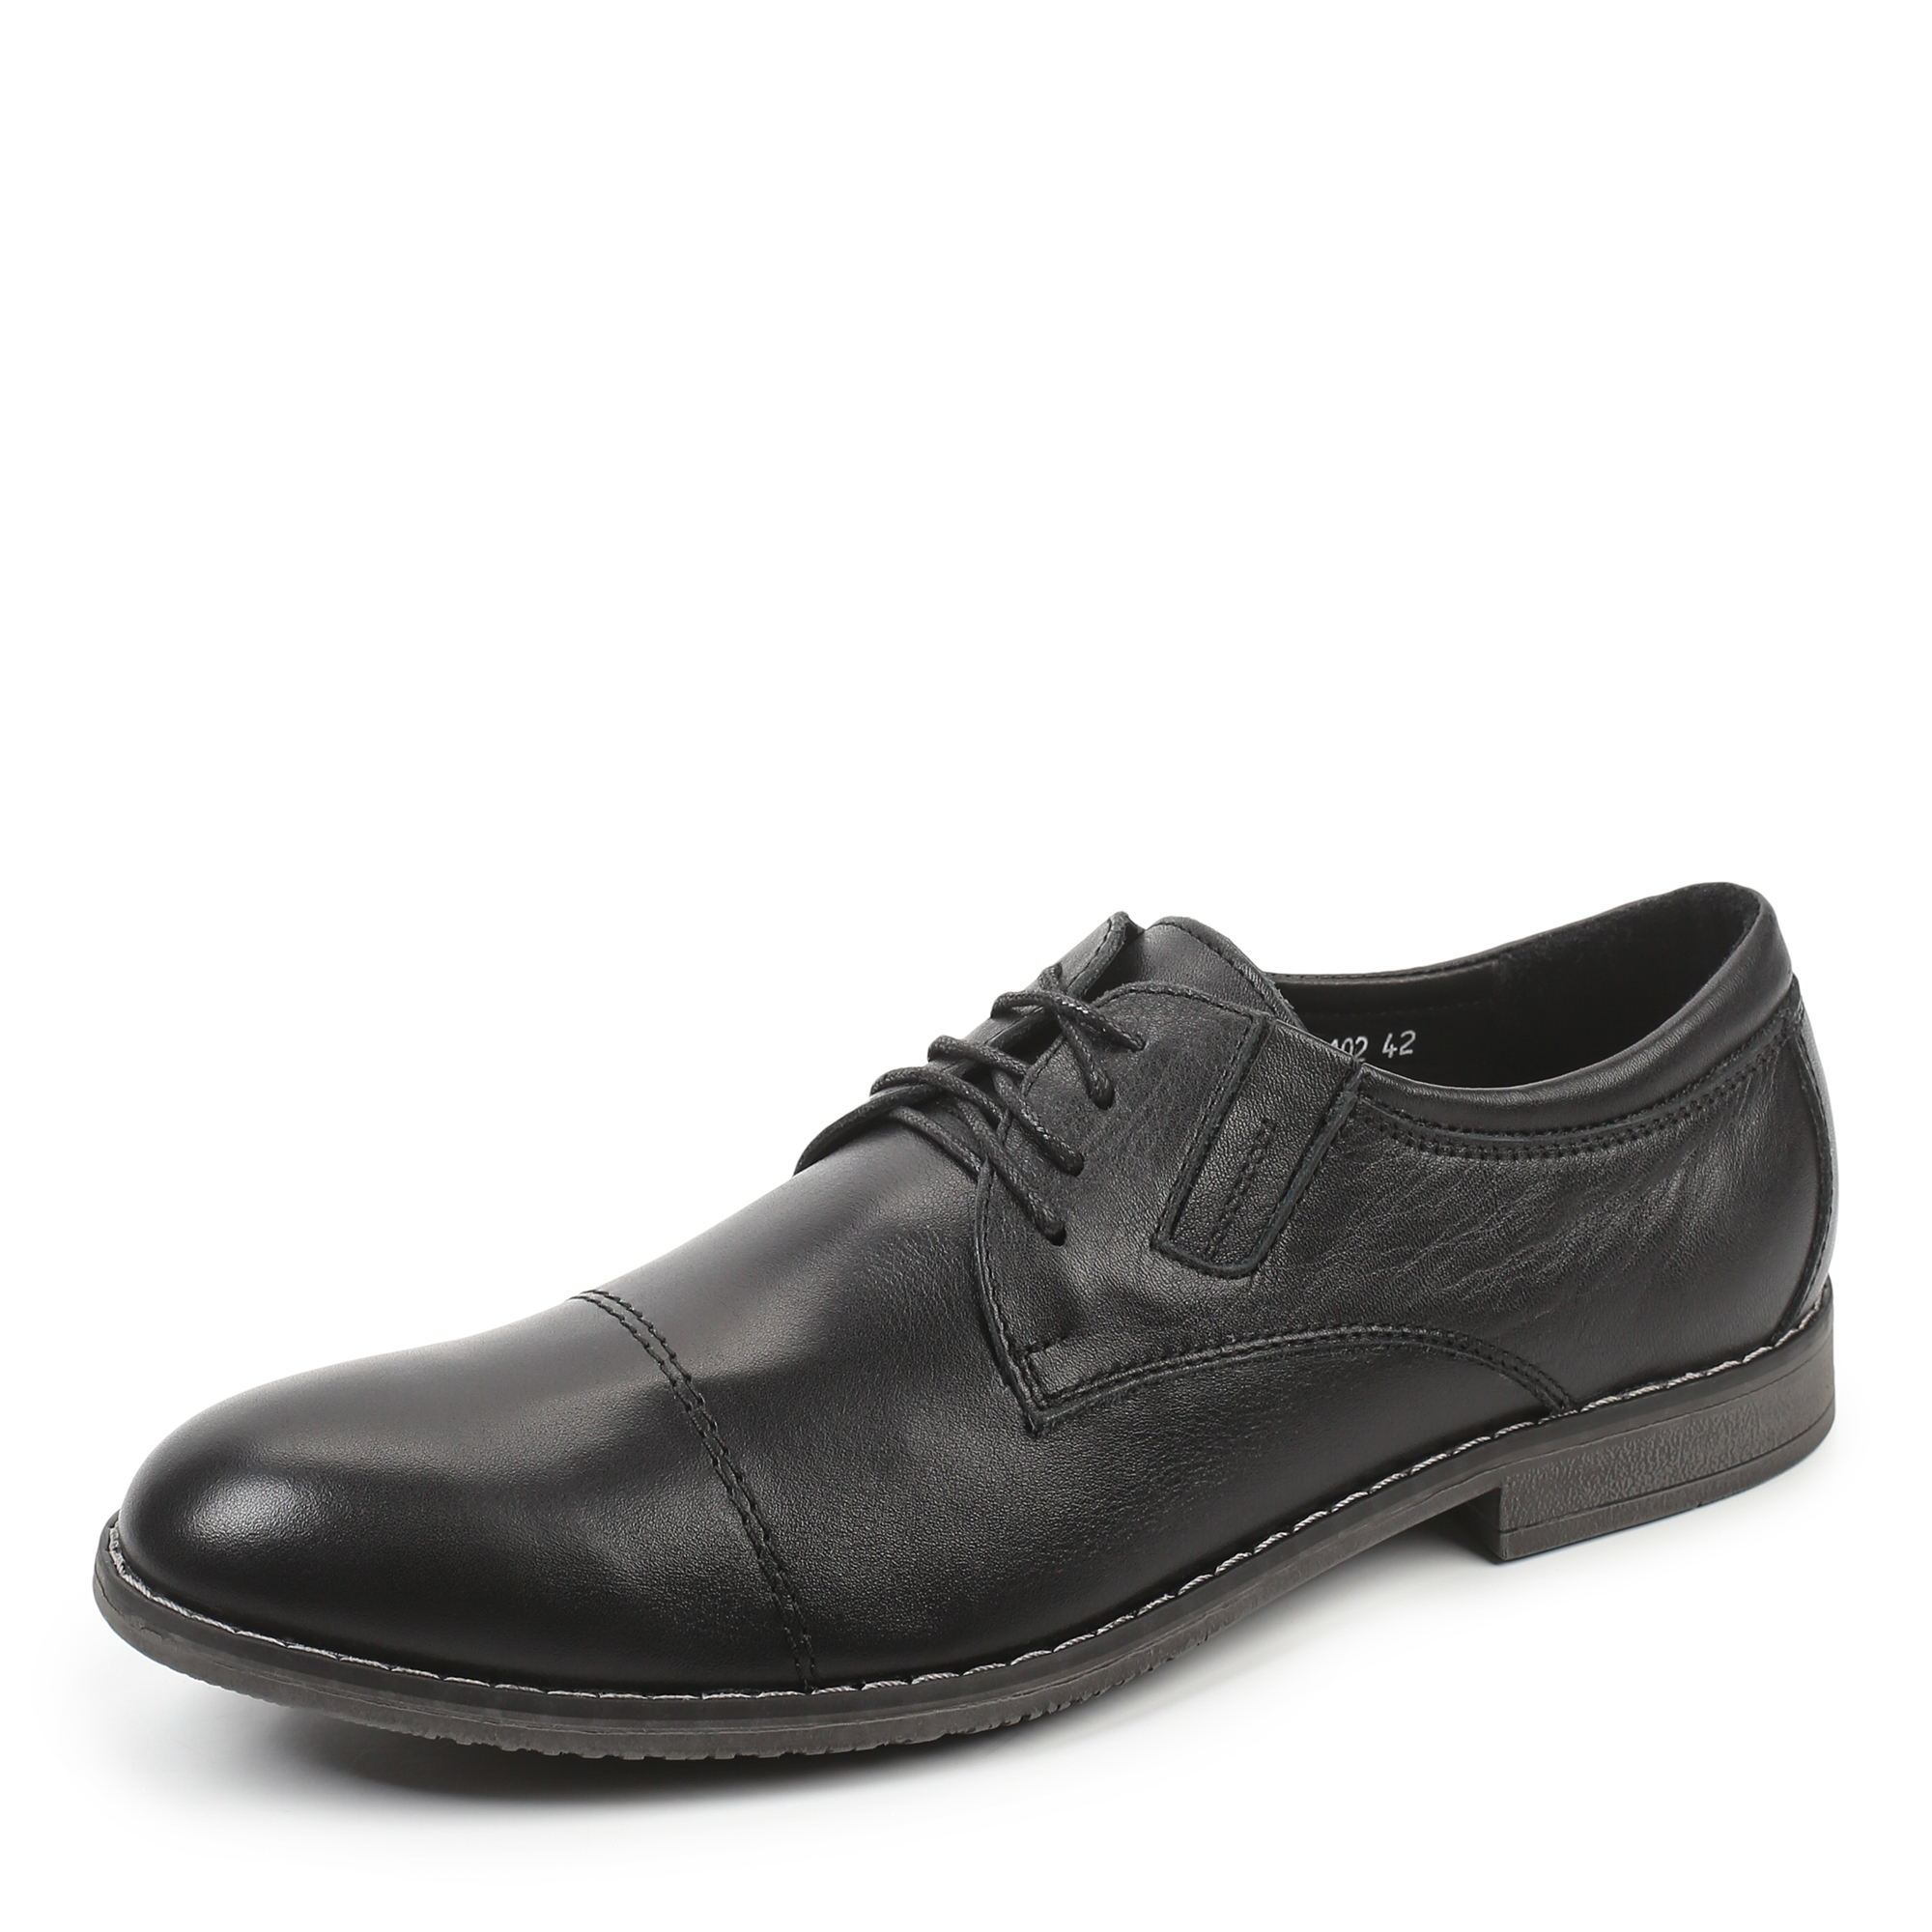 Туфли/полуботинки Thomas Munz 335-127A-1102, цвет черный, размер 41 - фото 2